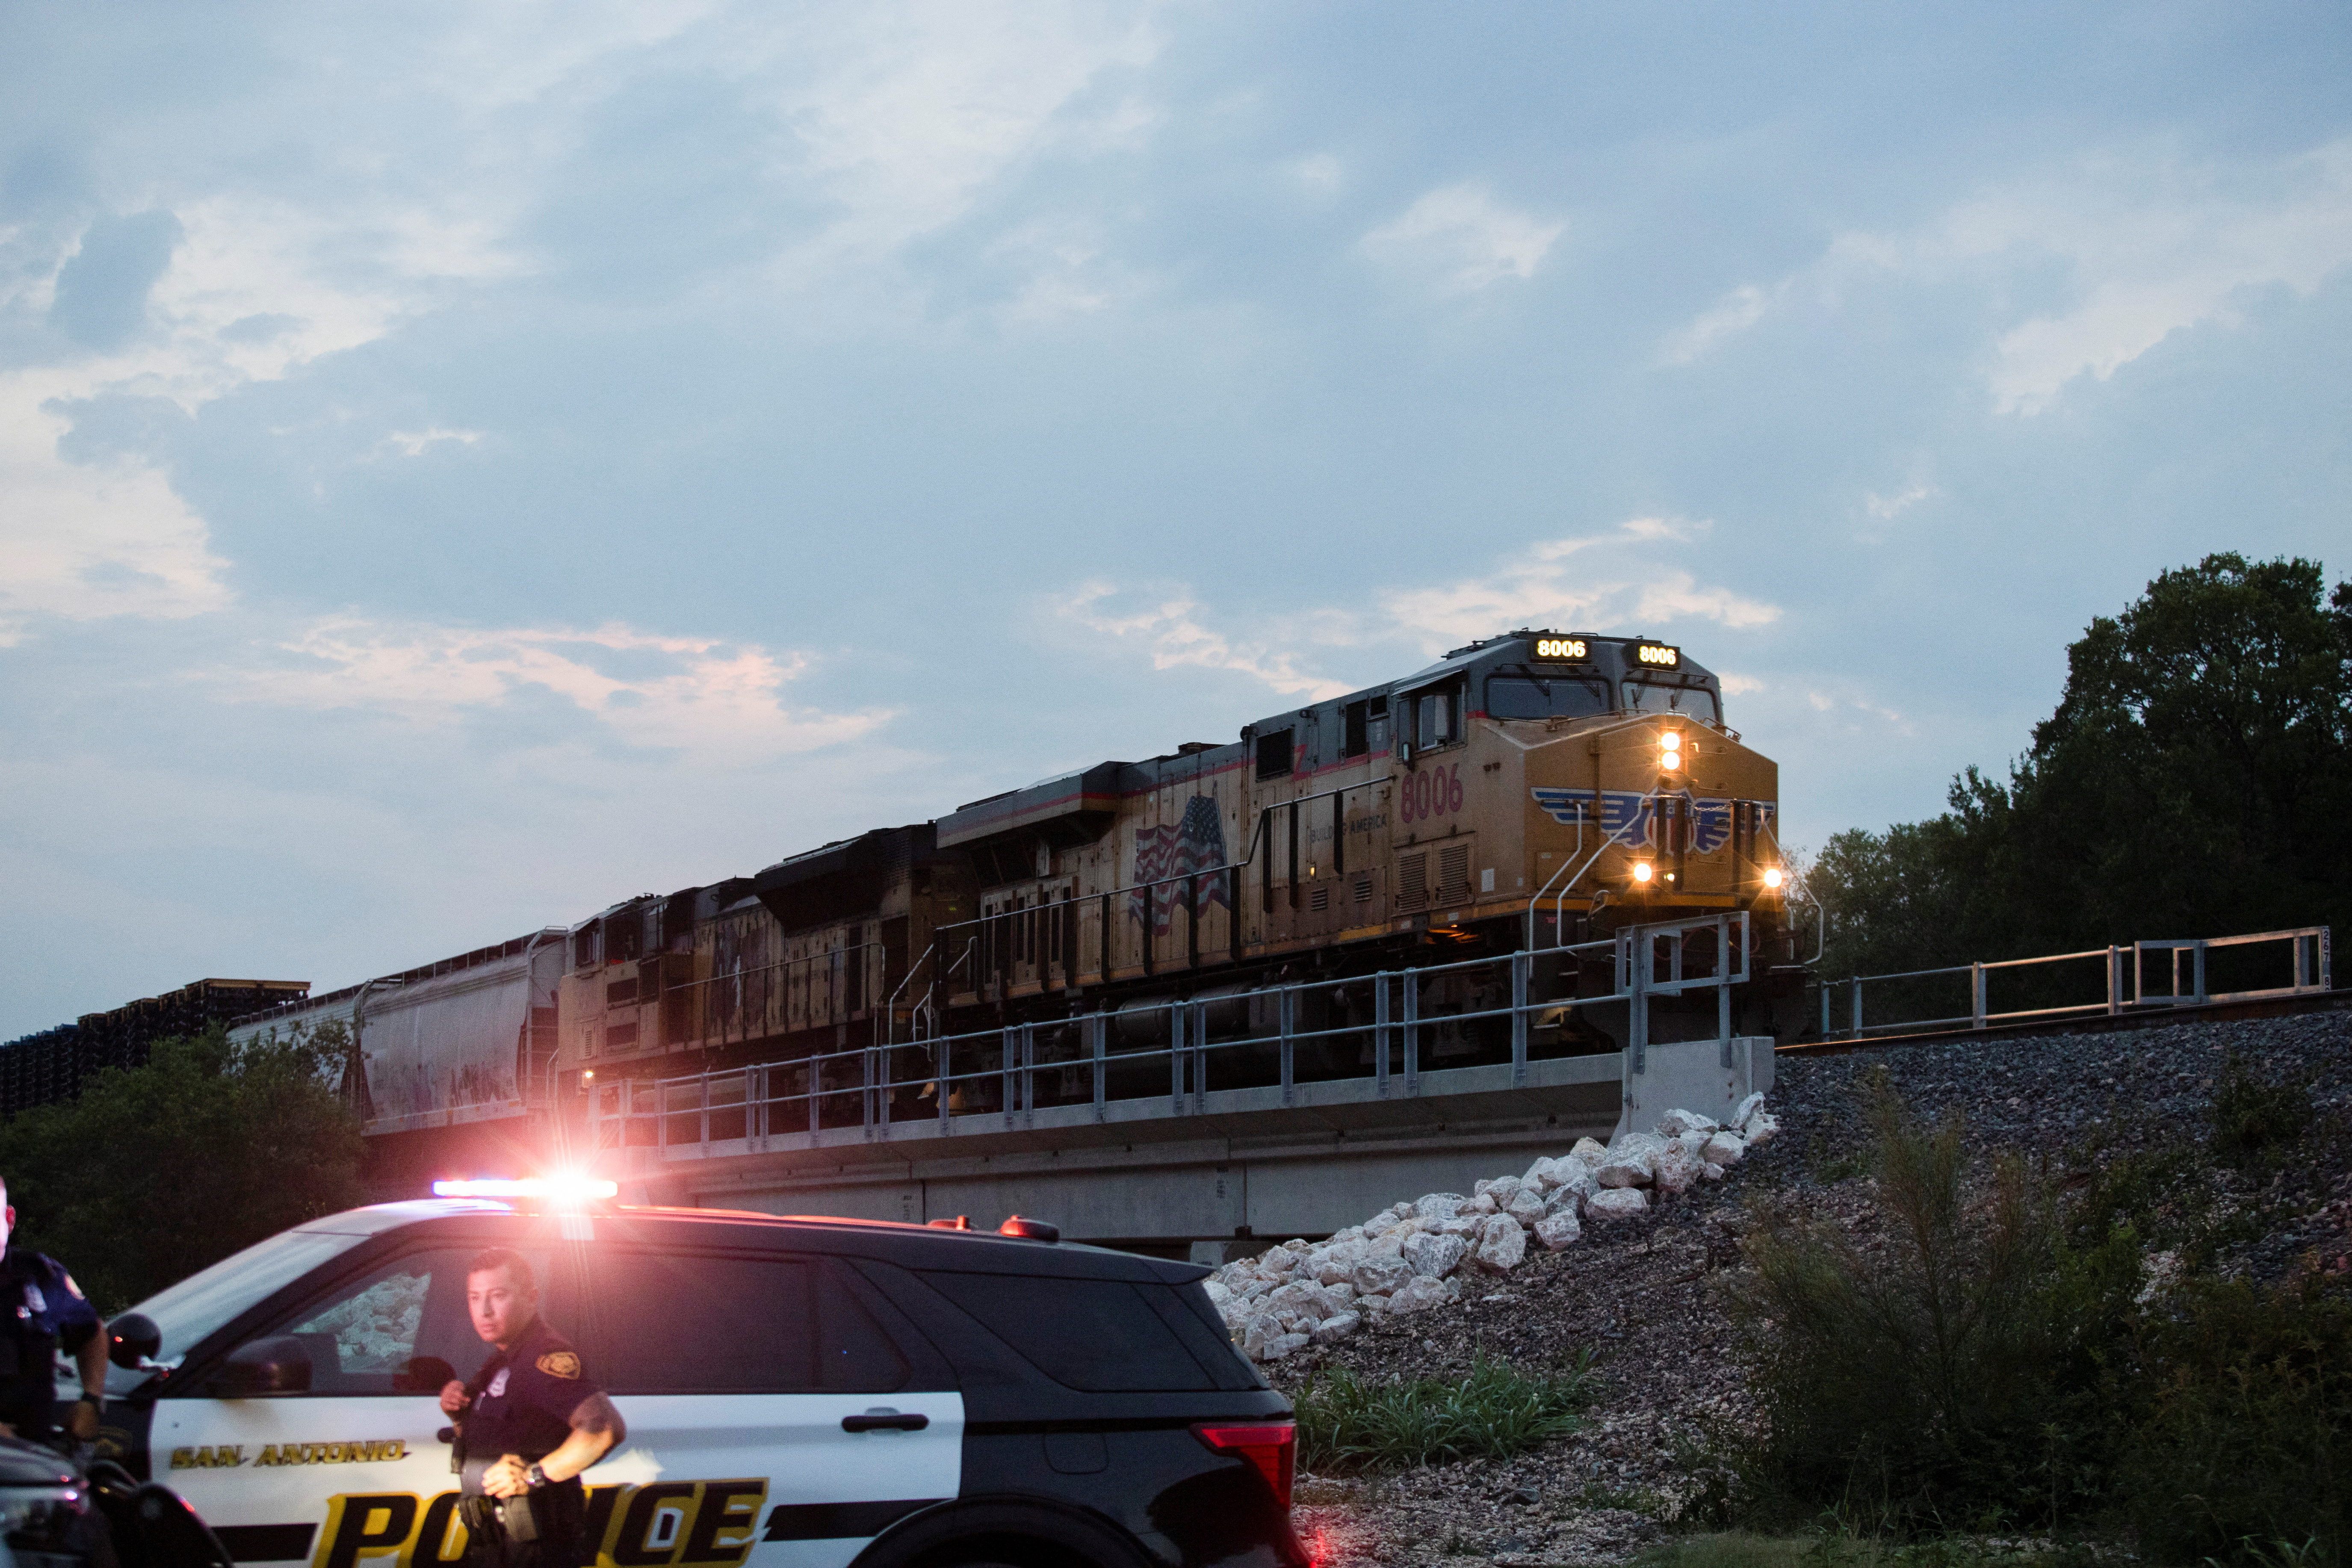 El camión se localizó junto a las vías del tren en una zona remota de la periferia sur de San Antonio. (Foto: REUTERS/Kaylee Greenlee Beal)
